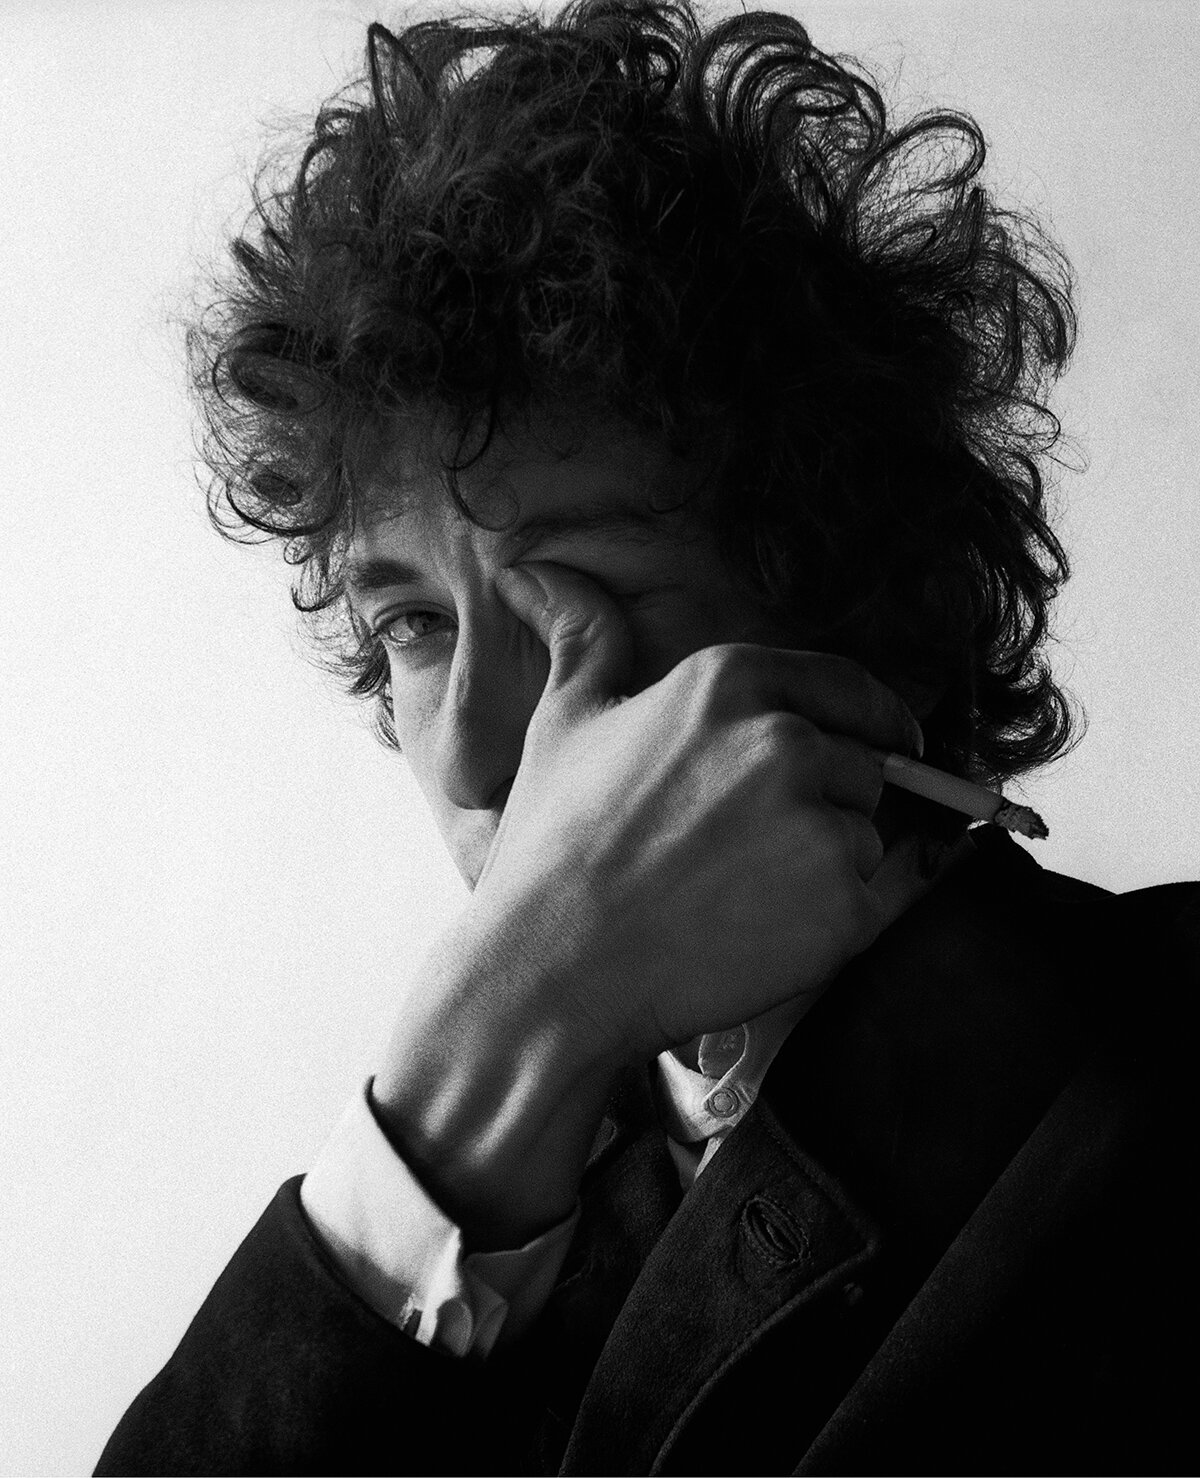 Bob Dylan, 1965. Photo by Jerry Schatzberg.